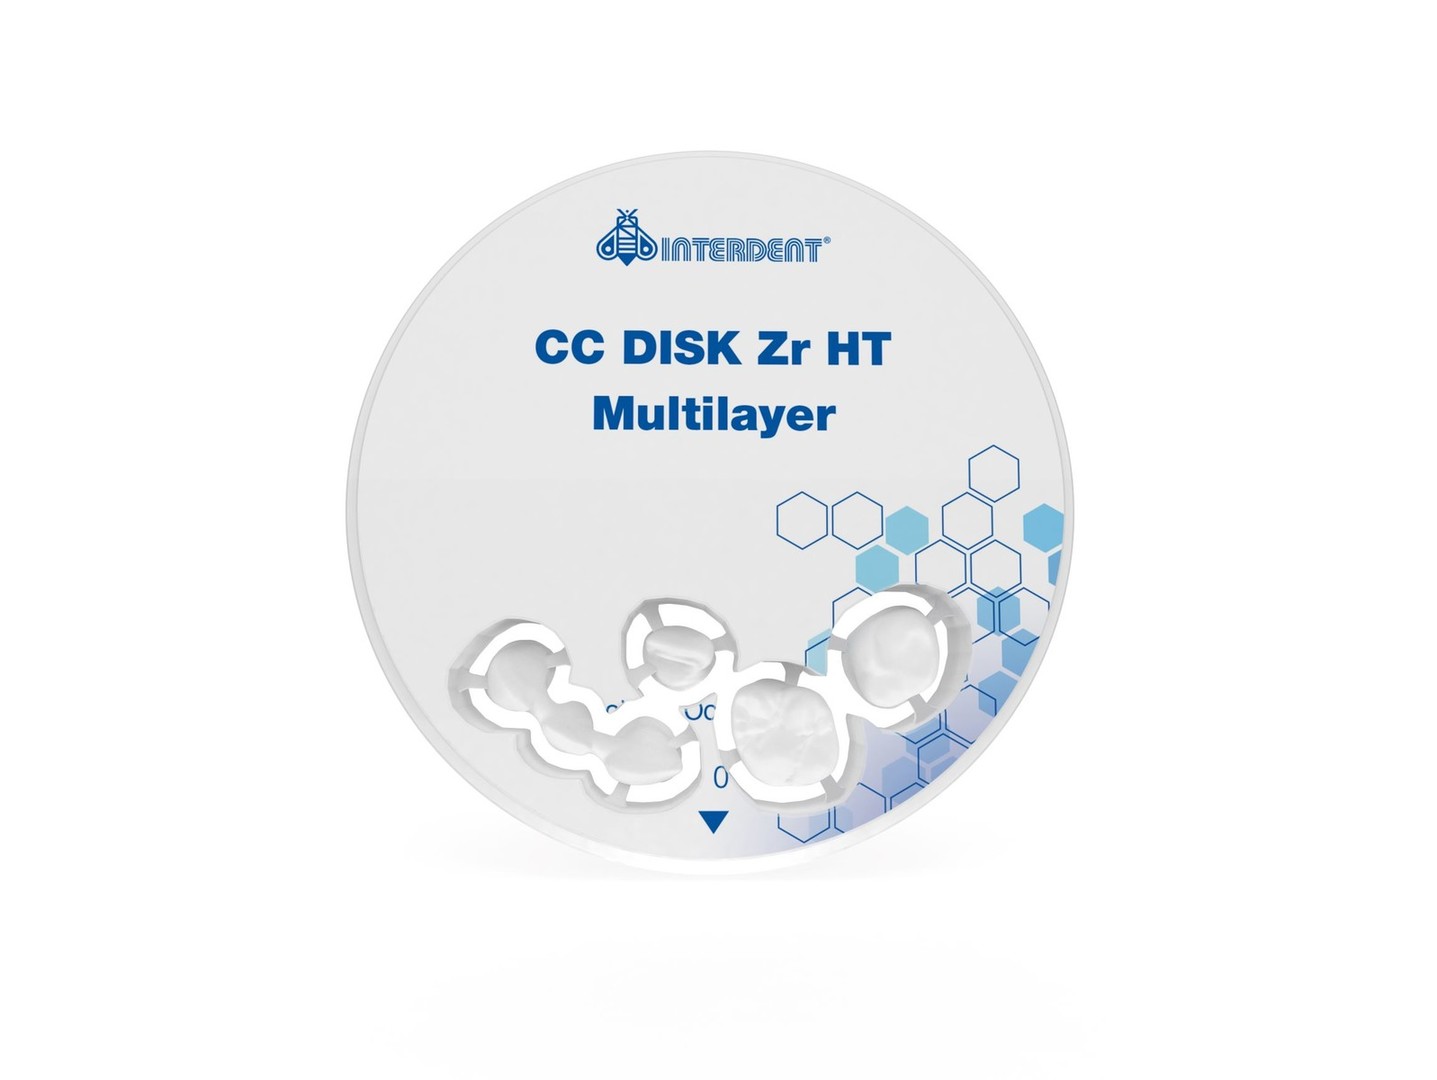 CC Disk Zr HT Multilayer